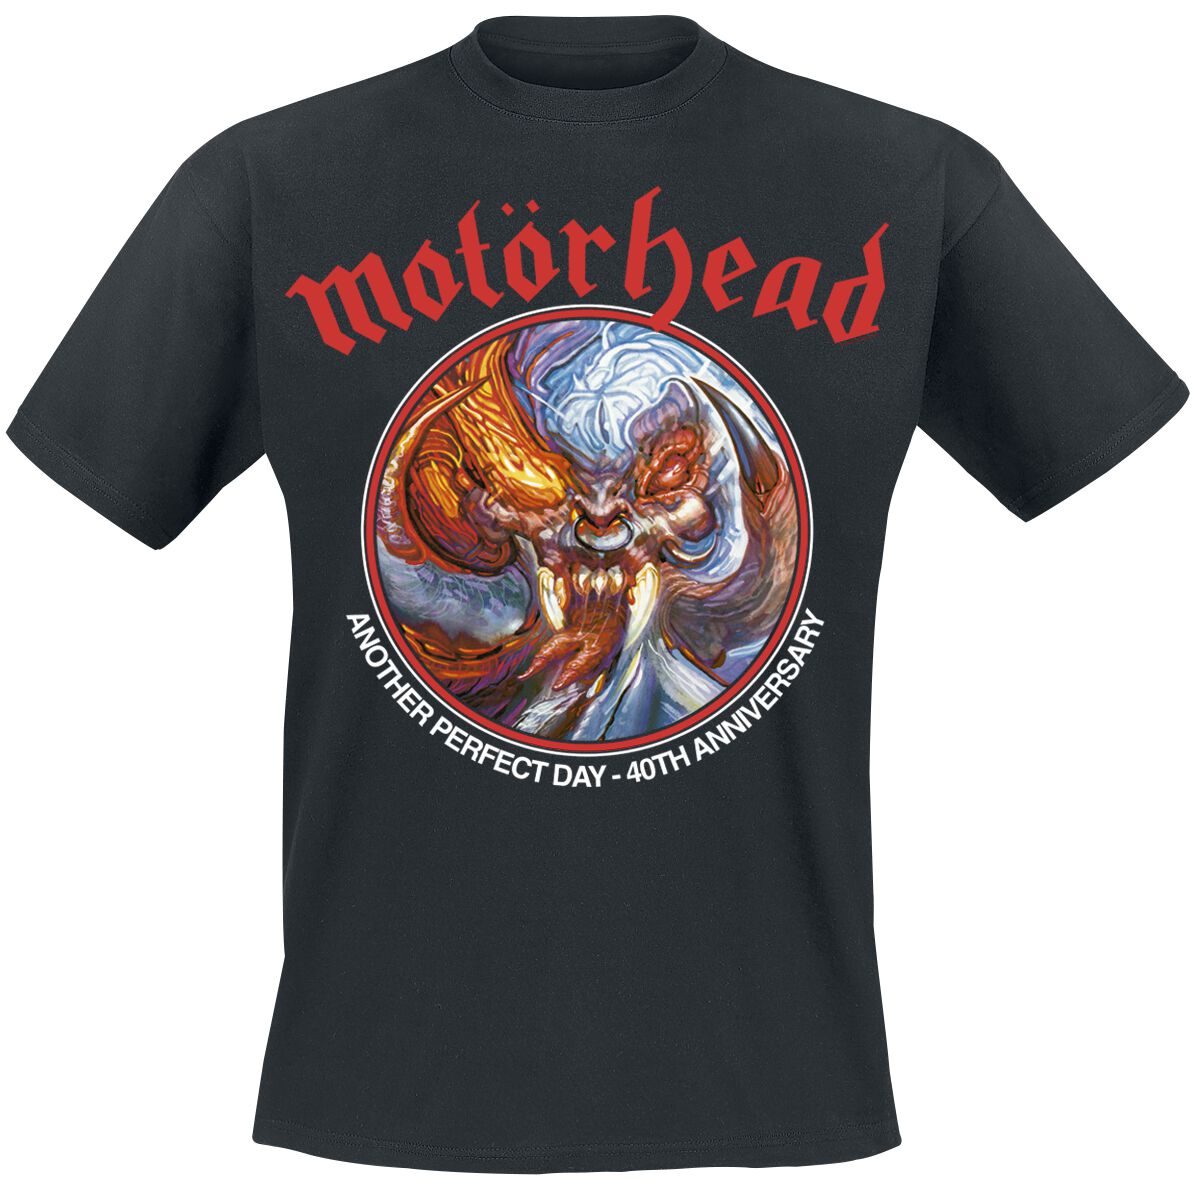 Motörhead T-Shirt - Another Perfect Day Anniversary - S bis 4XL - für Männer - Größe 4XL - schwarz  - Lizenziertes Merchandise!